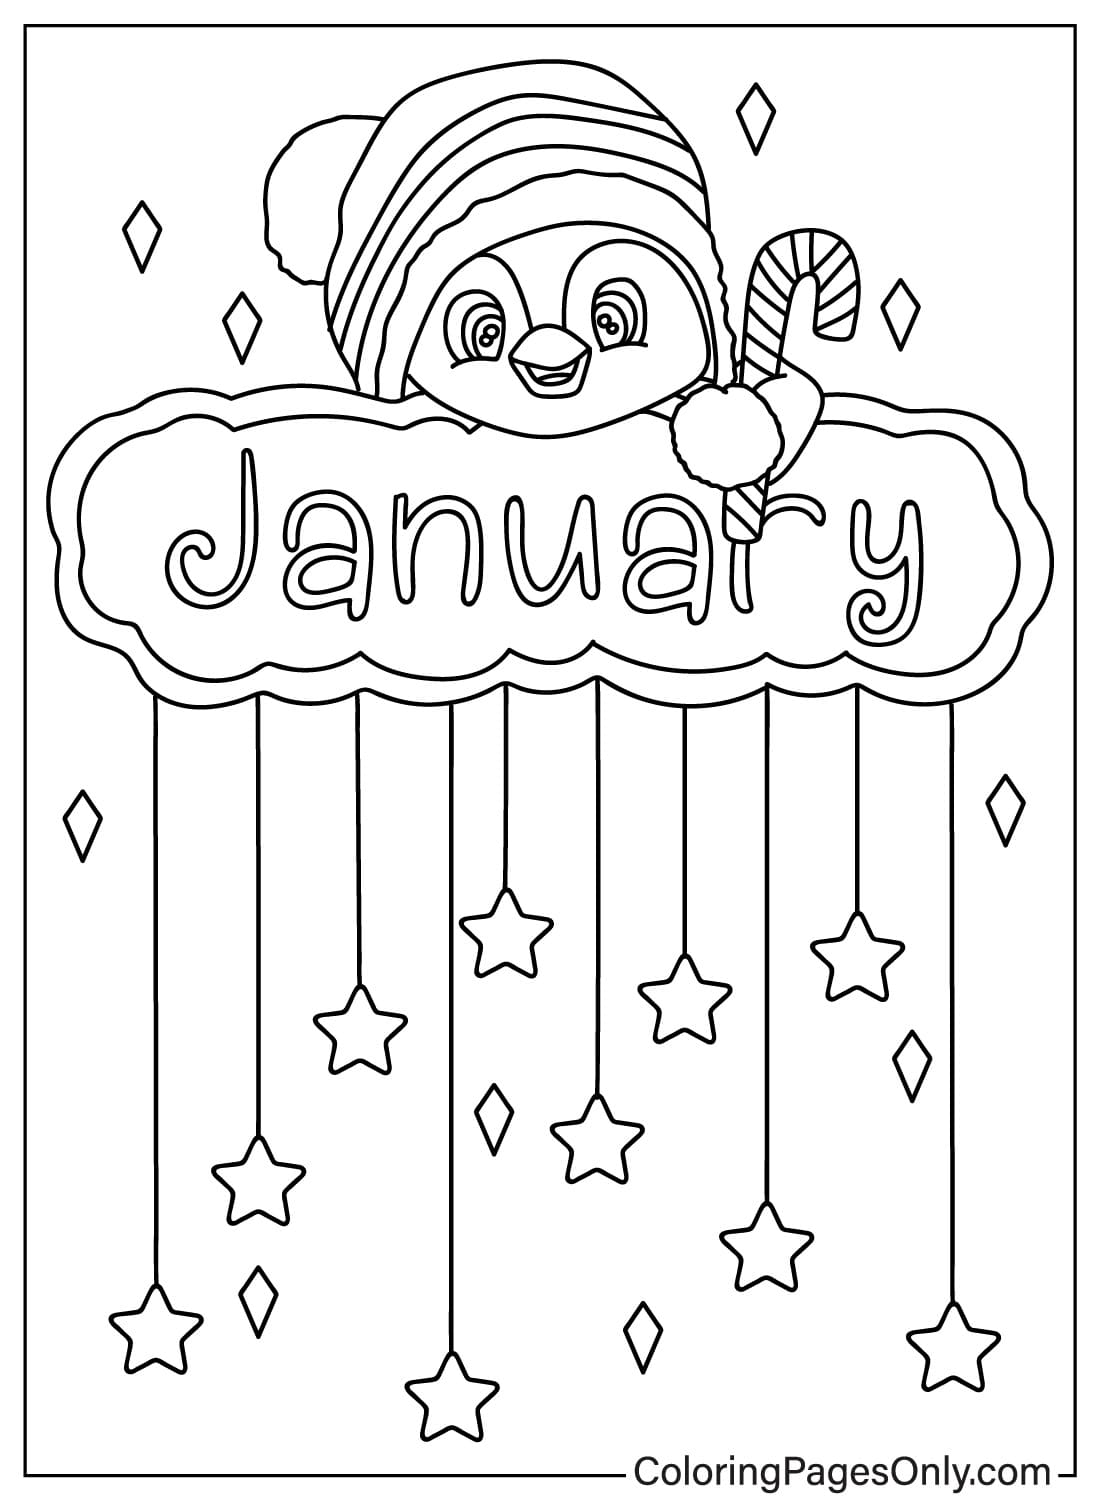 Dibujo para colorear de enero para imprimir a partir de enero de 2024